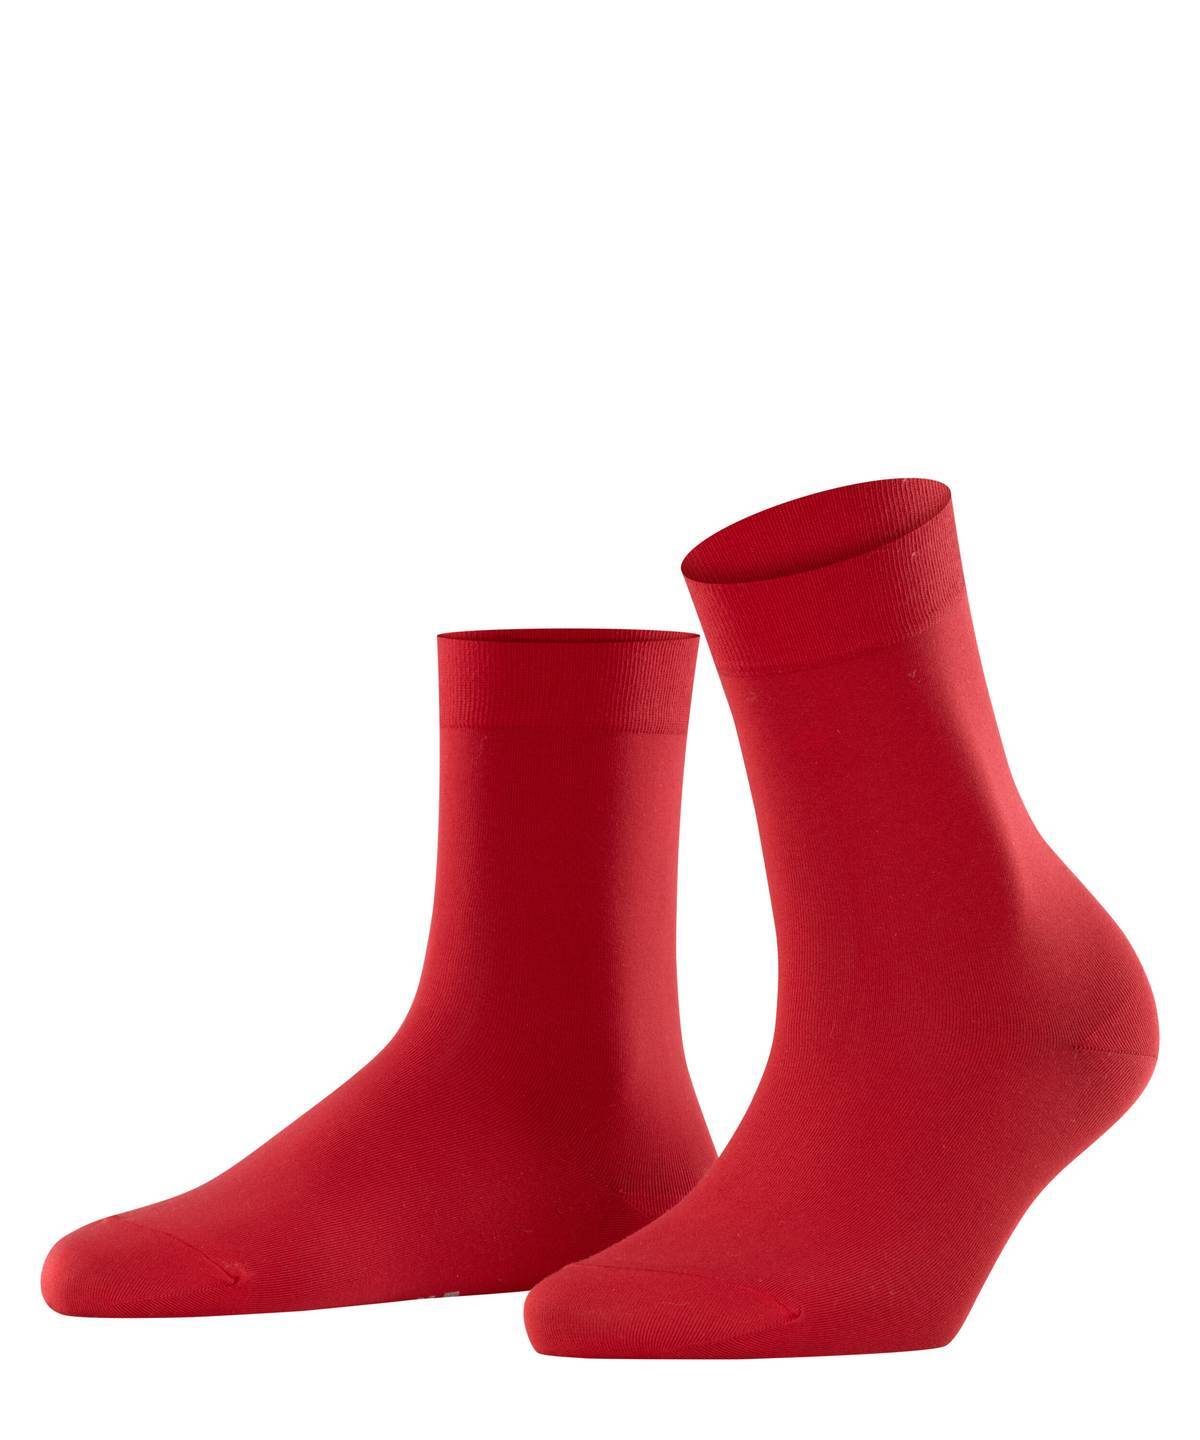 Falke Damen Socken Hersteller: Falke Bestellnummer:4031309112367